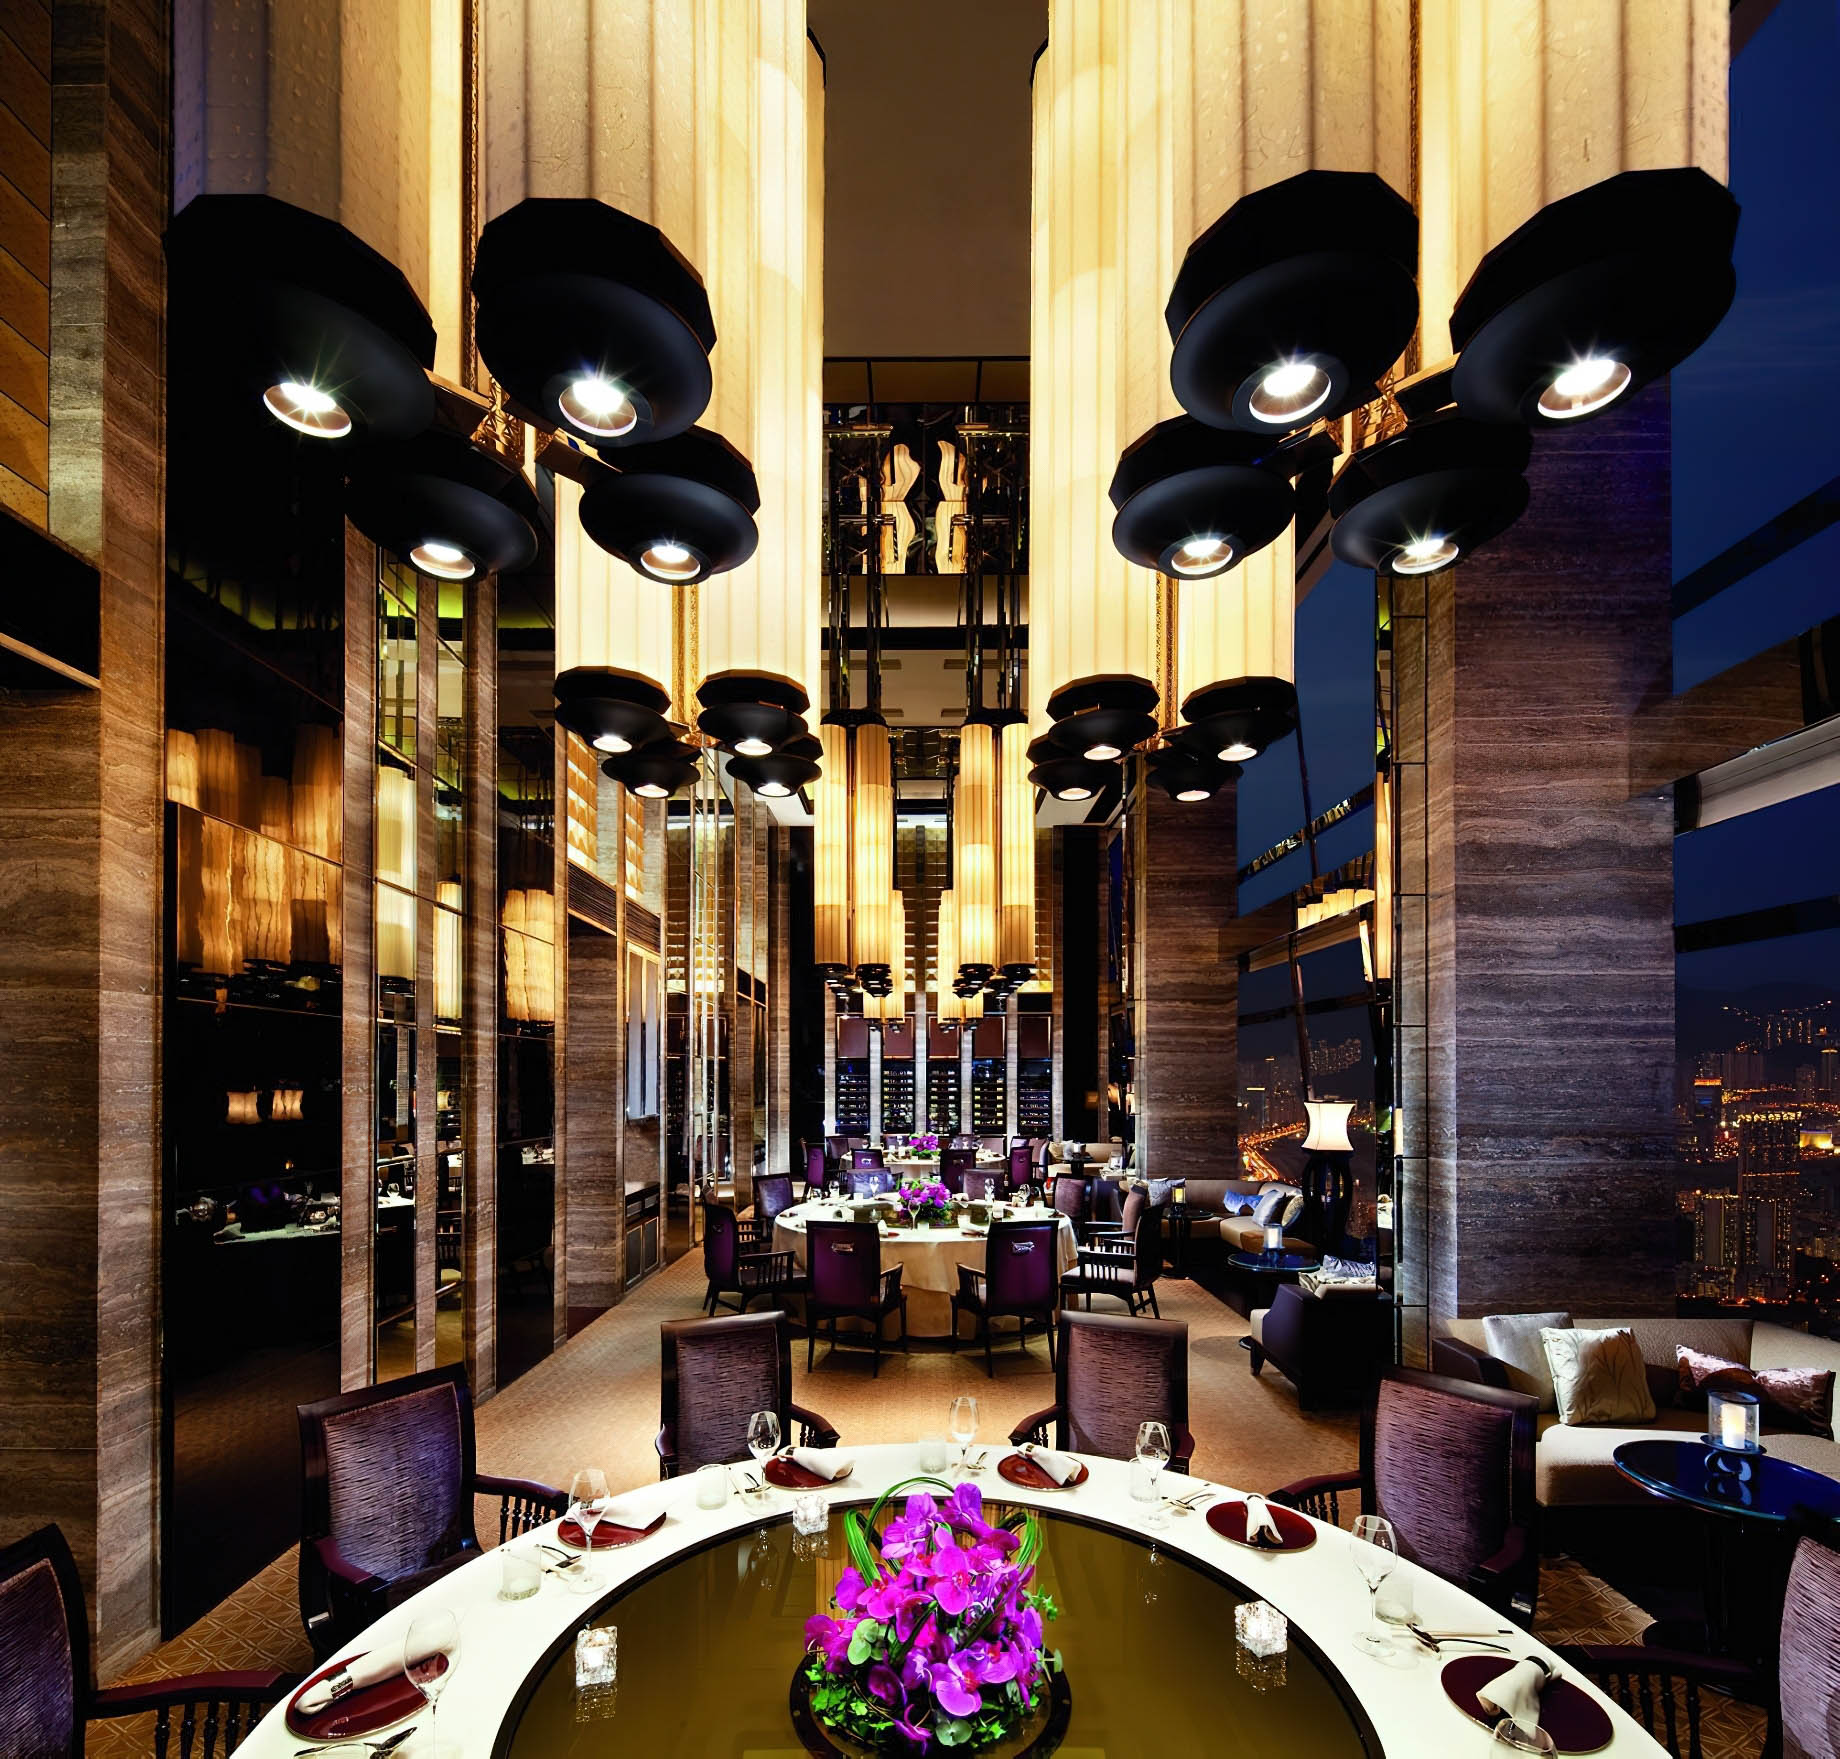 The Ritz-Carlton, Hong Kong Hotel – West Kowloon, Hong Kong – 102nd Floor Tin Lung Heen Restaurant Decor